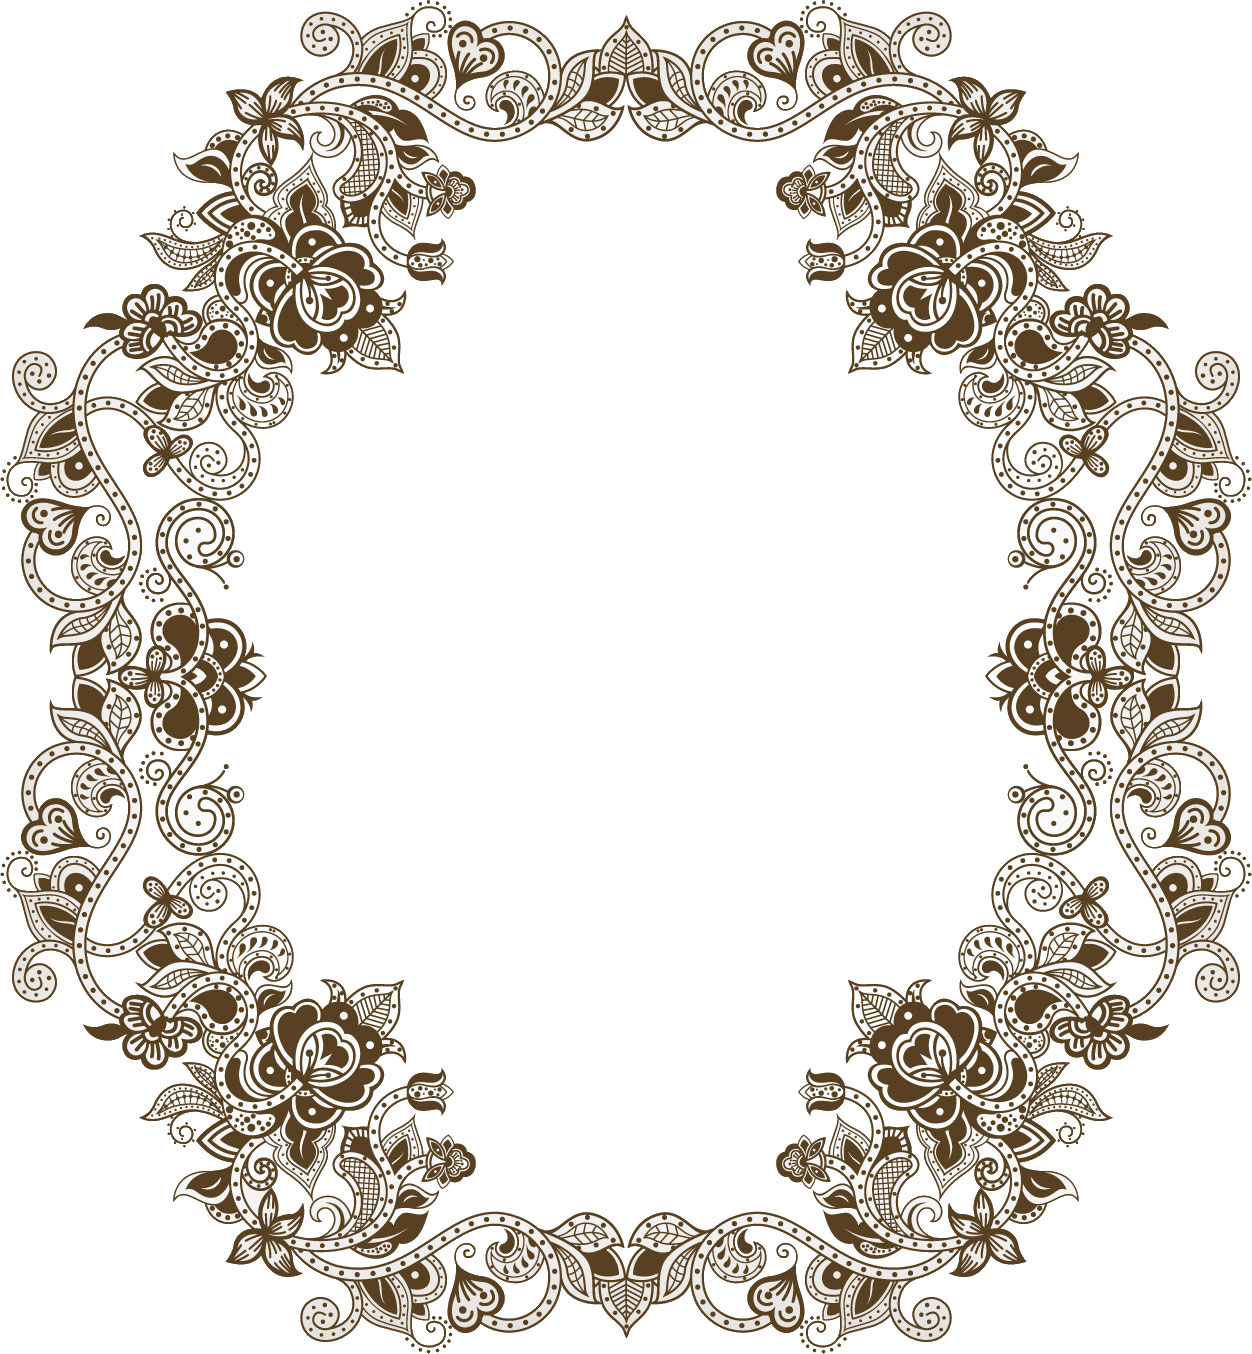 白黒 モノクロの花のイラスト フリー素材 フレーム枠no 7 花と蔦のイメージ